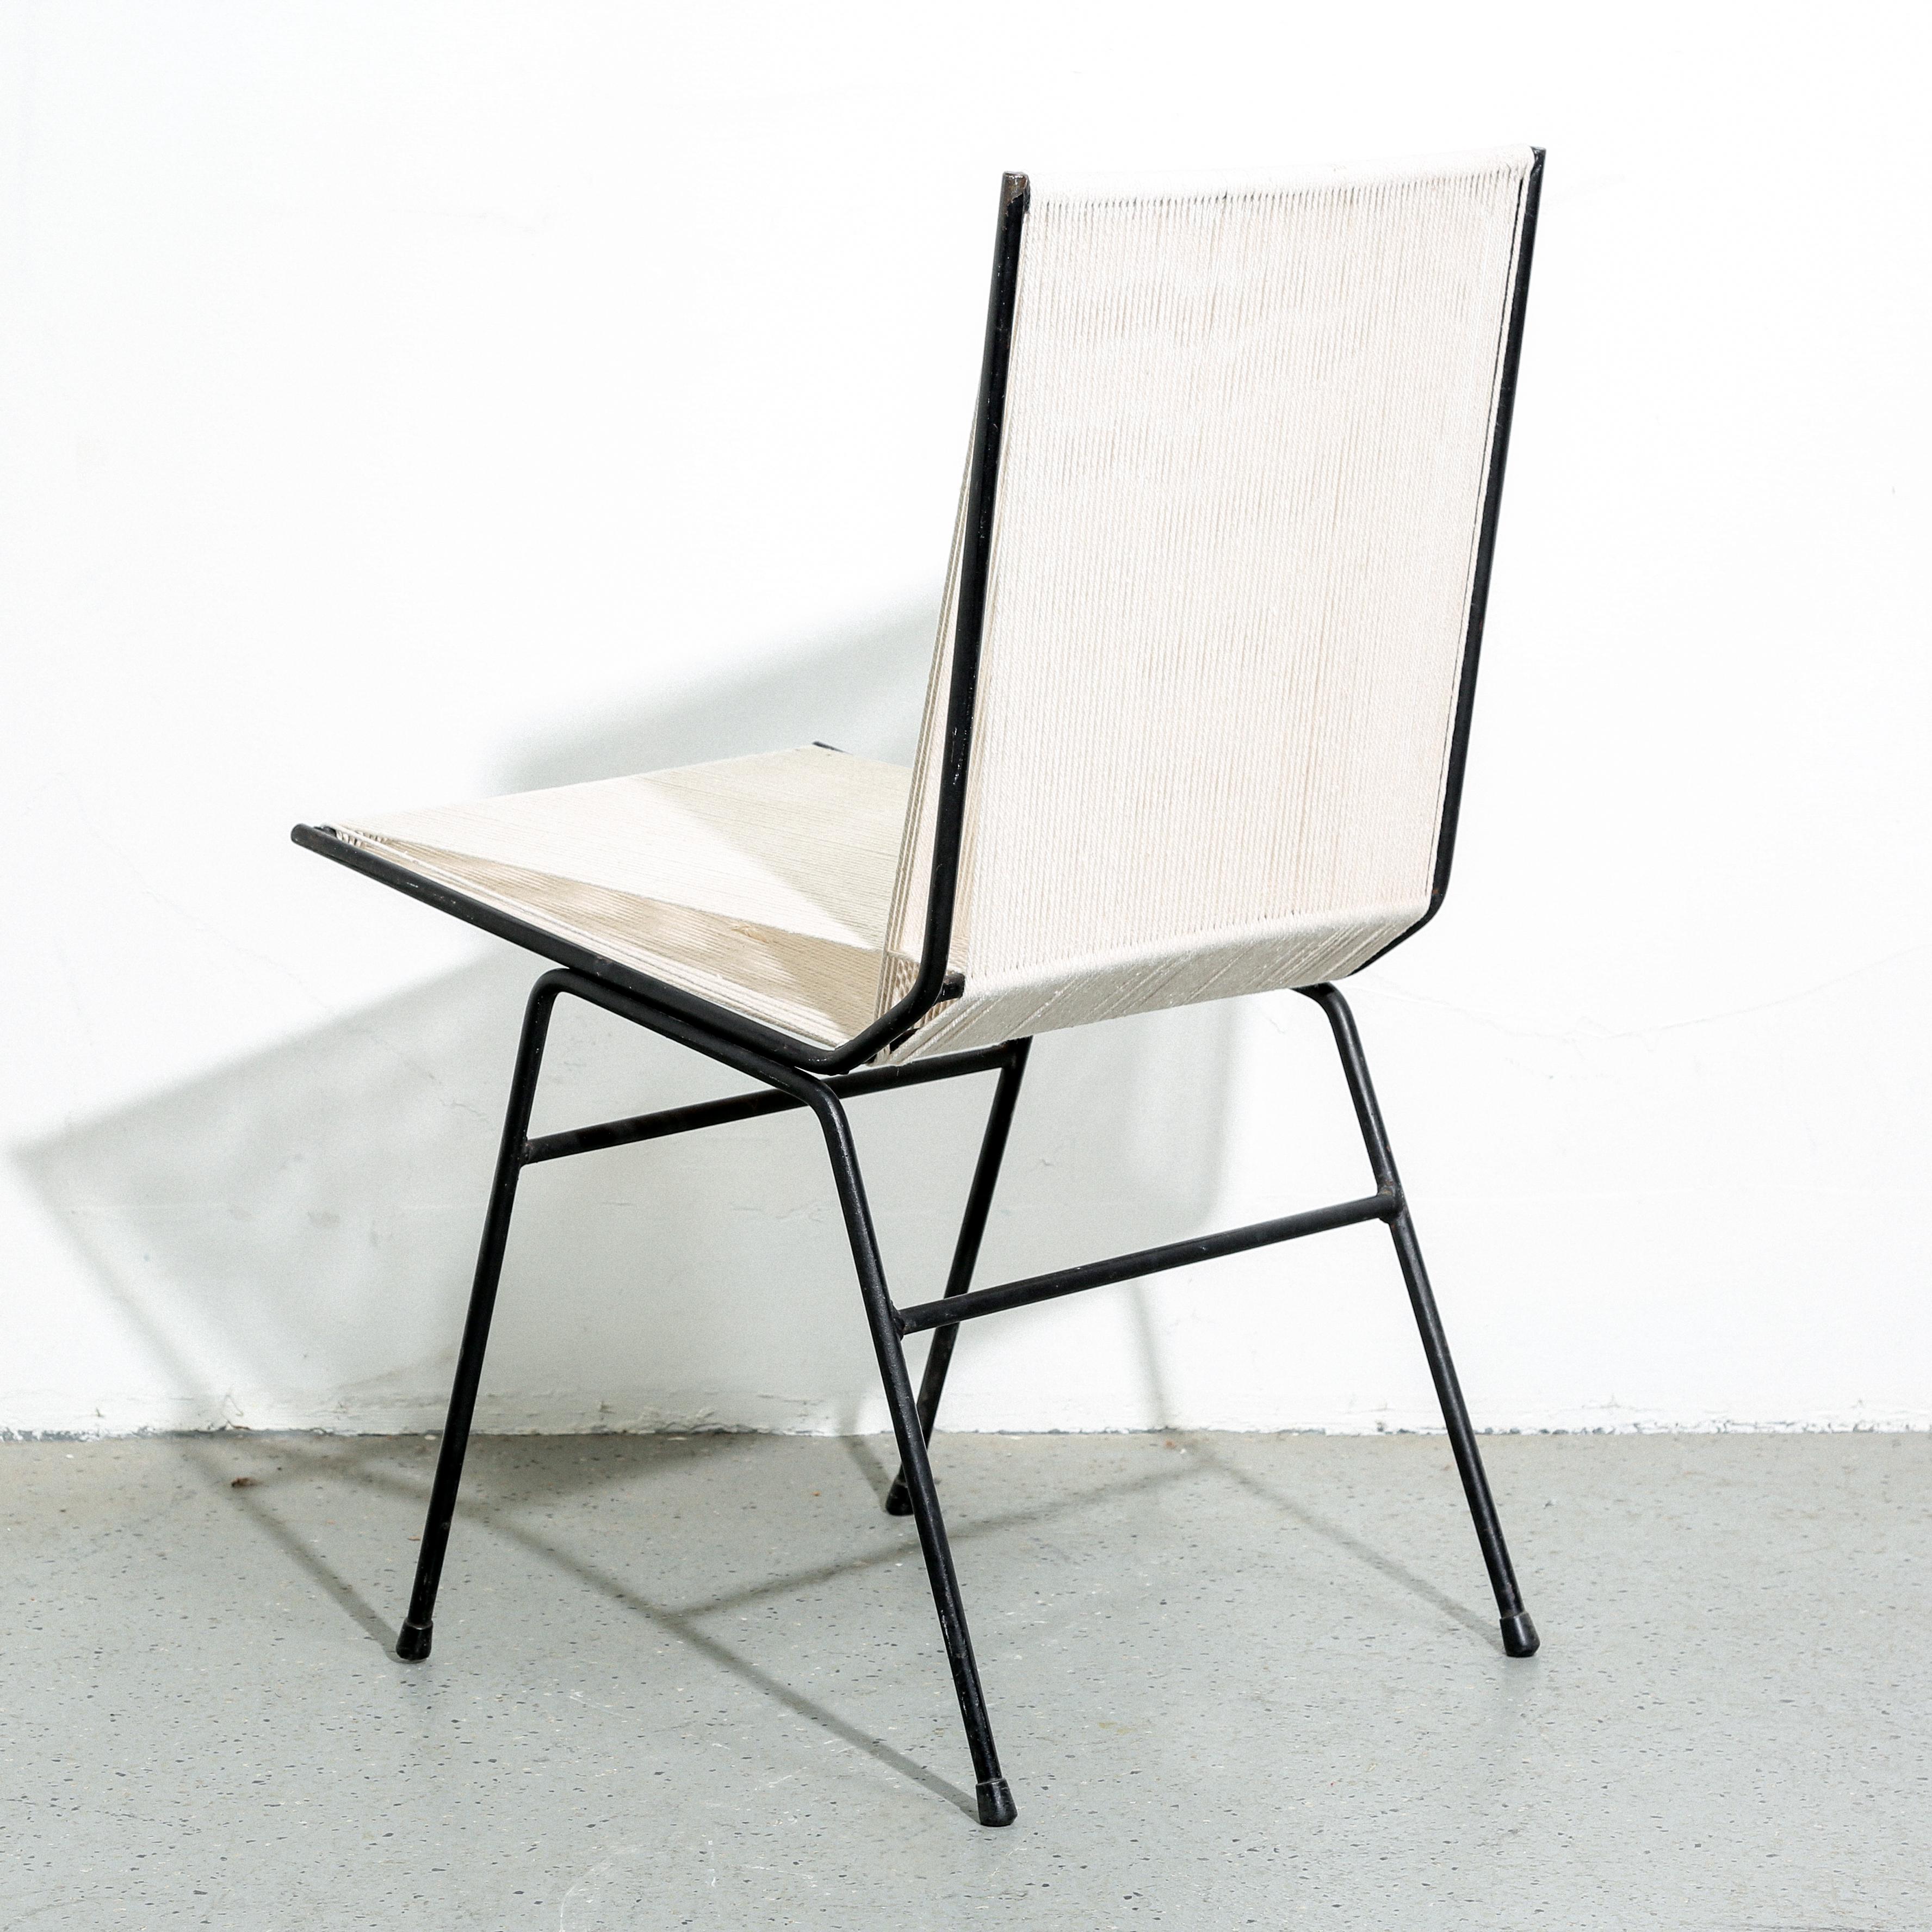 Découvrez l'allure intemporelle du design moderne du milieu du siècle avec notre chaise Allan Gould Sting des années 1950, méticuleusement restaurée. Véritable joyau pour les aficionados du mobilier vintage, cette pièce emblématique incarne